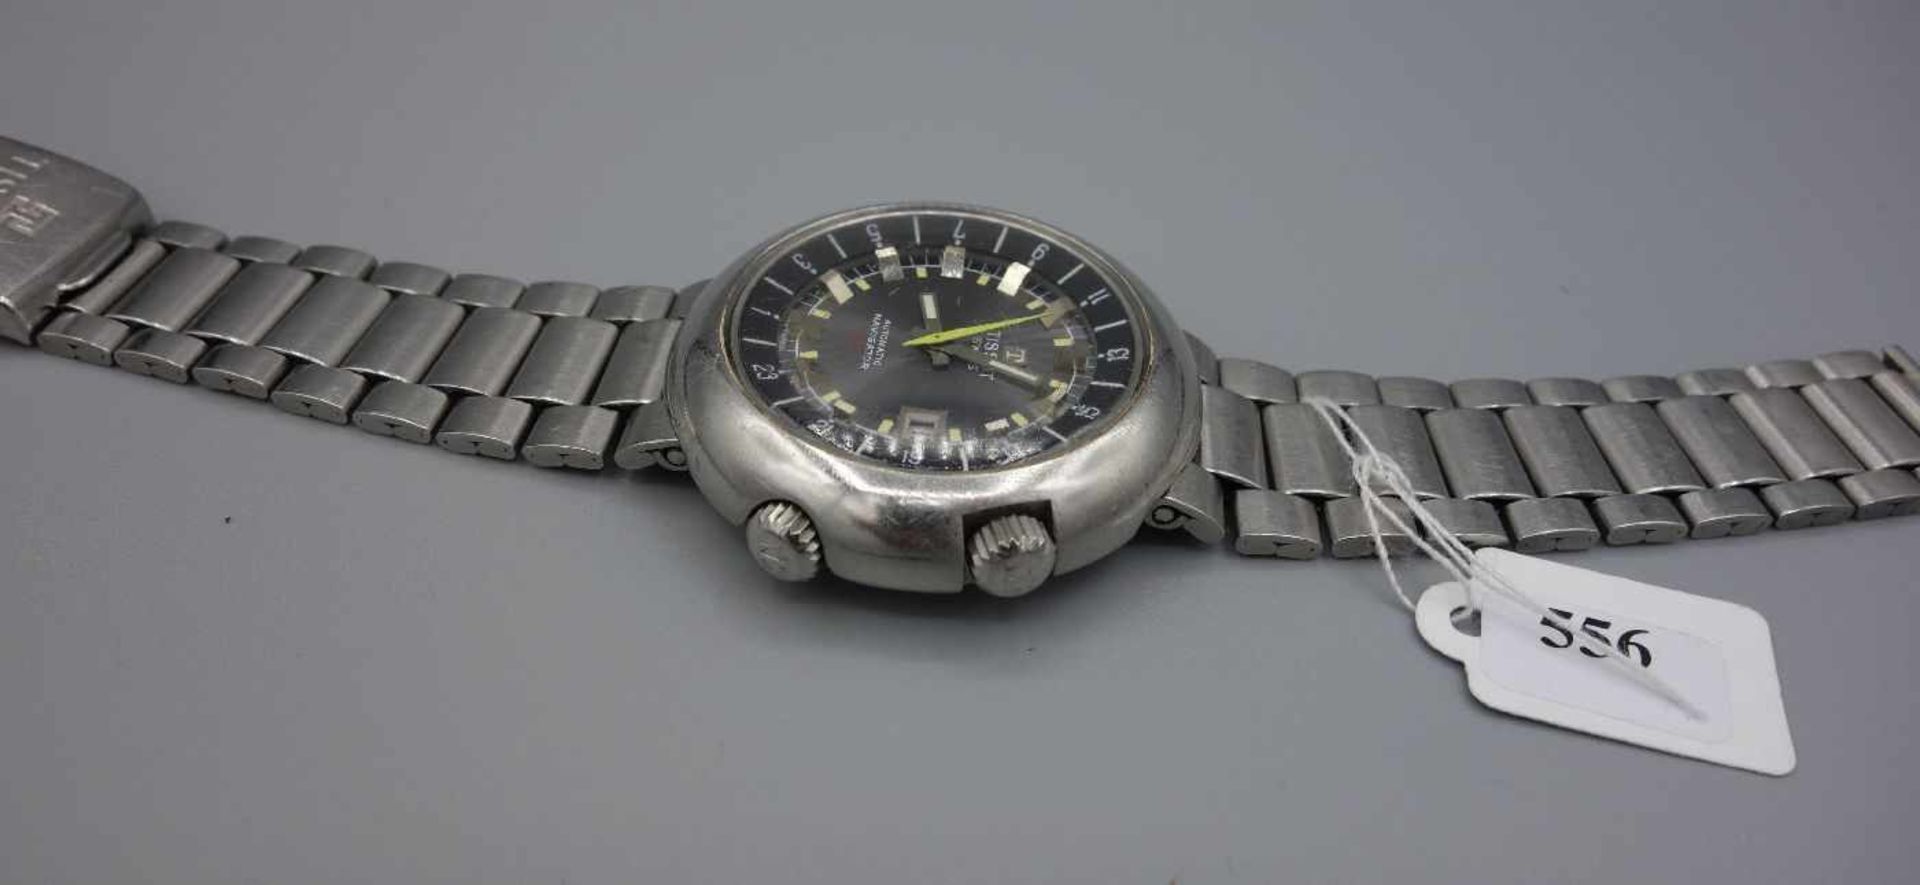 VINTAGE ARMBANDUHR: TISSOT NAVIGATOR T12 / wristwatch, 1970er Jahre, Manufaktur Tissot / Schweiz, - Image 4 of 8